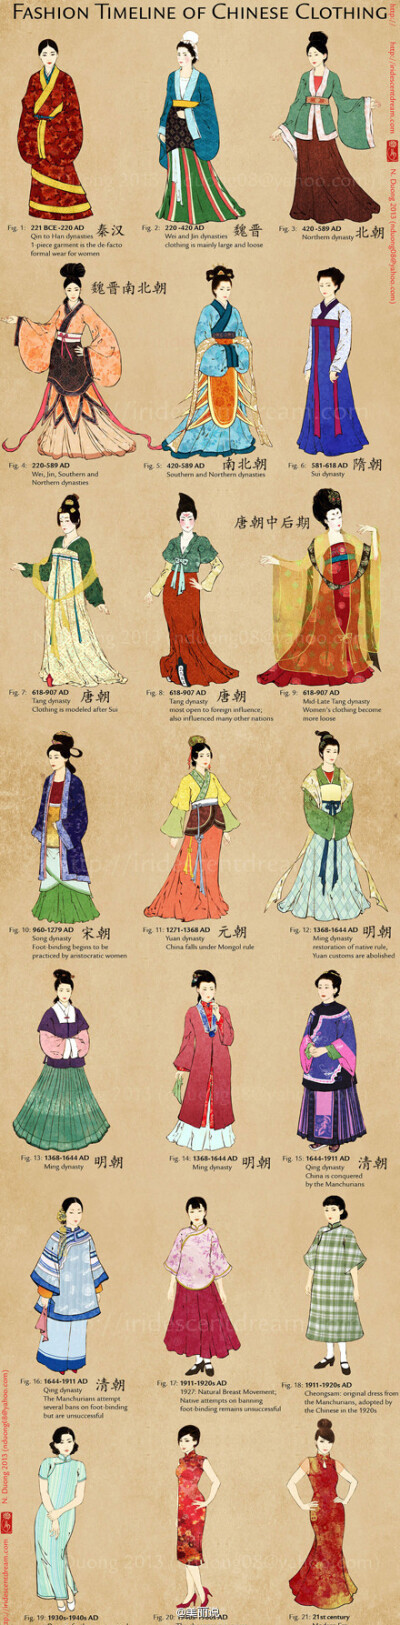 这是中国历代服装史,是不是都好美啊 ,你想穿越回哪一个年代呢